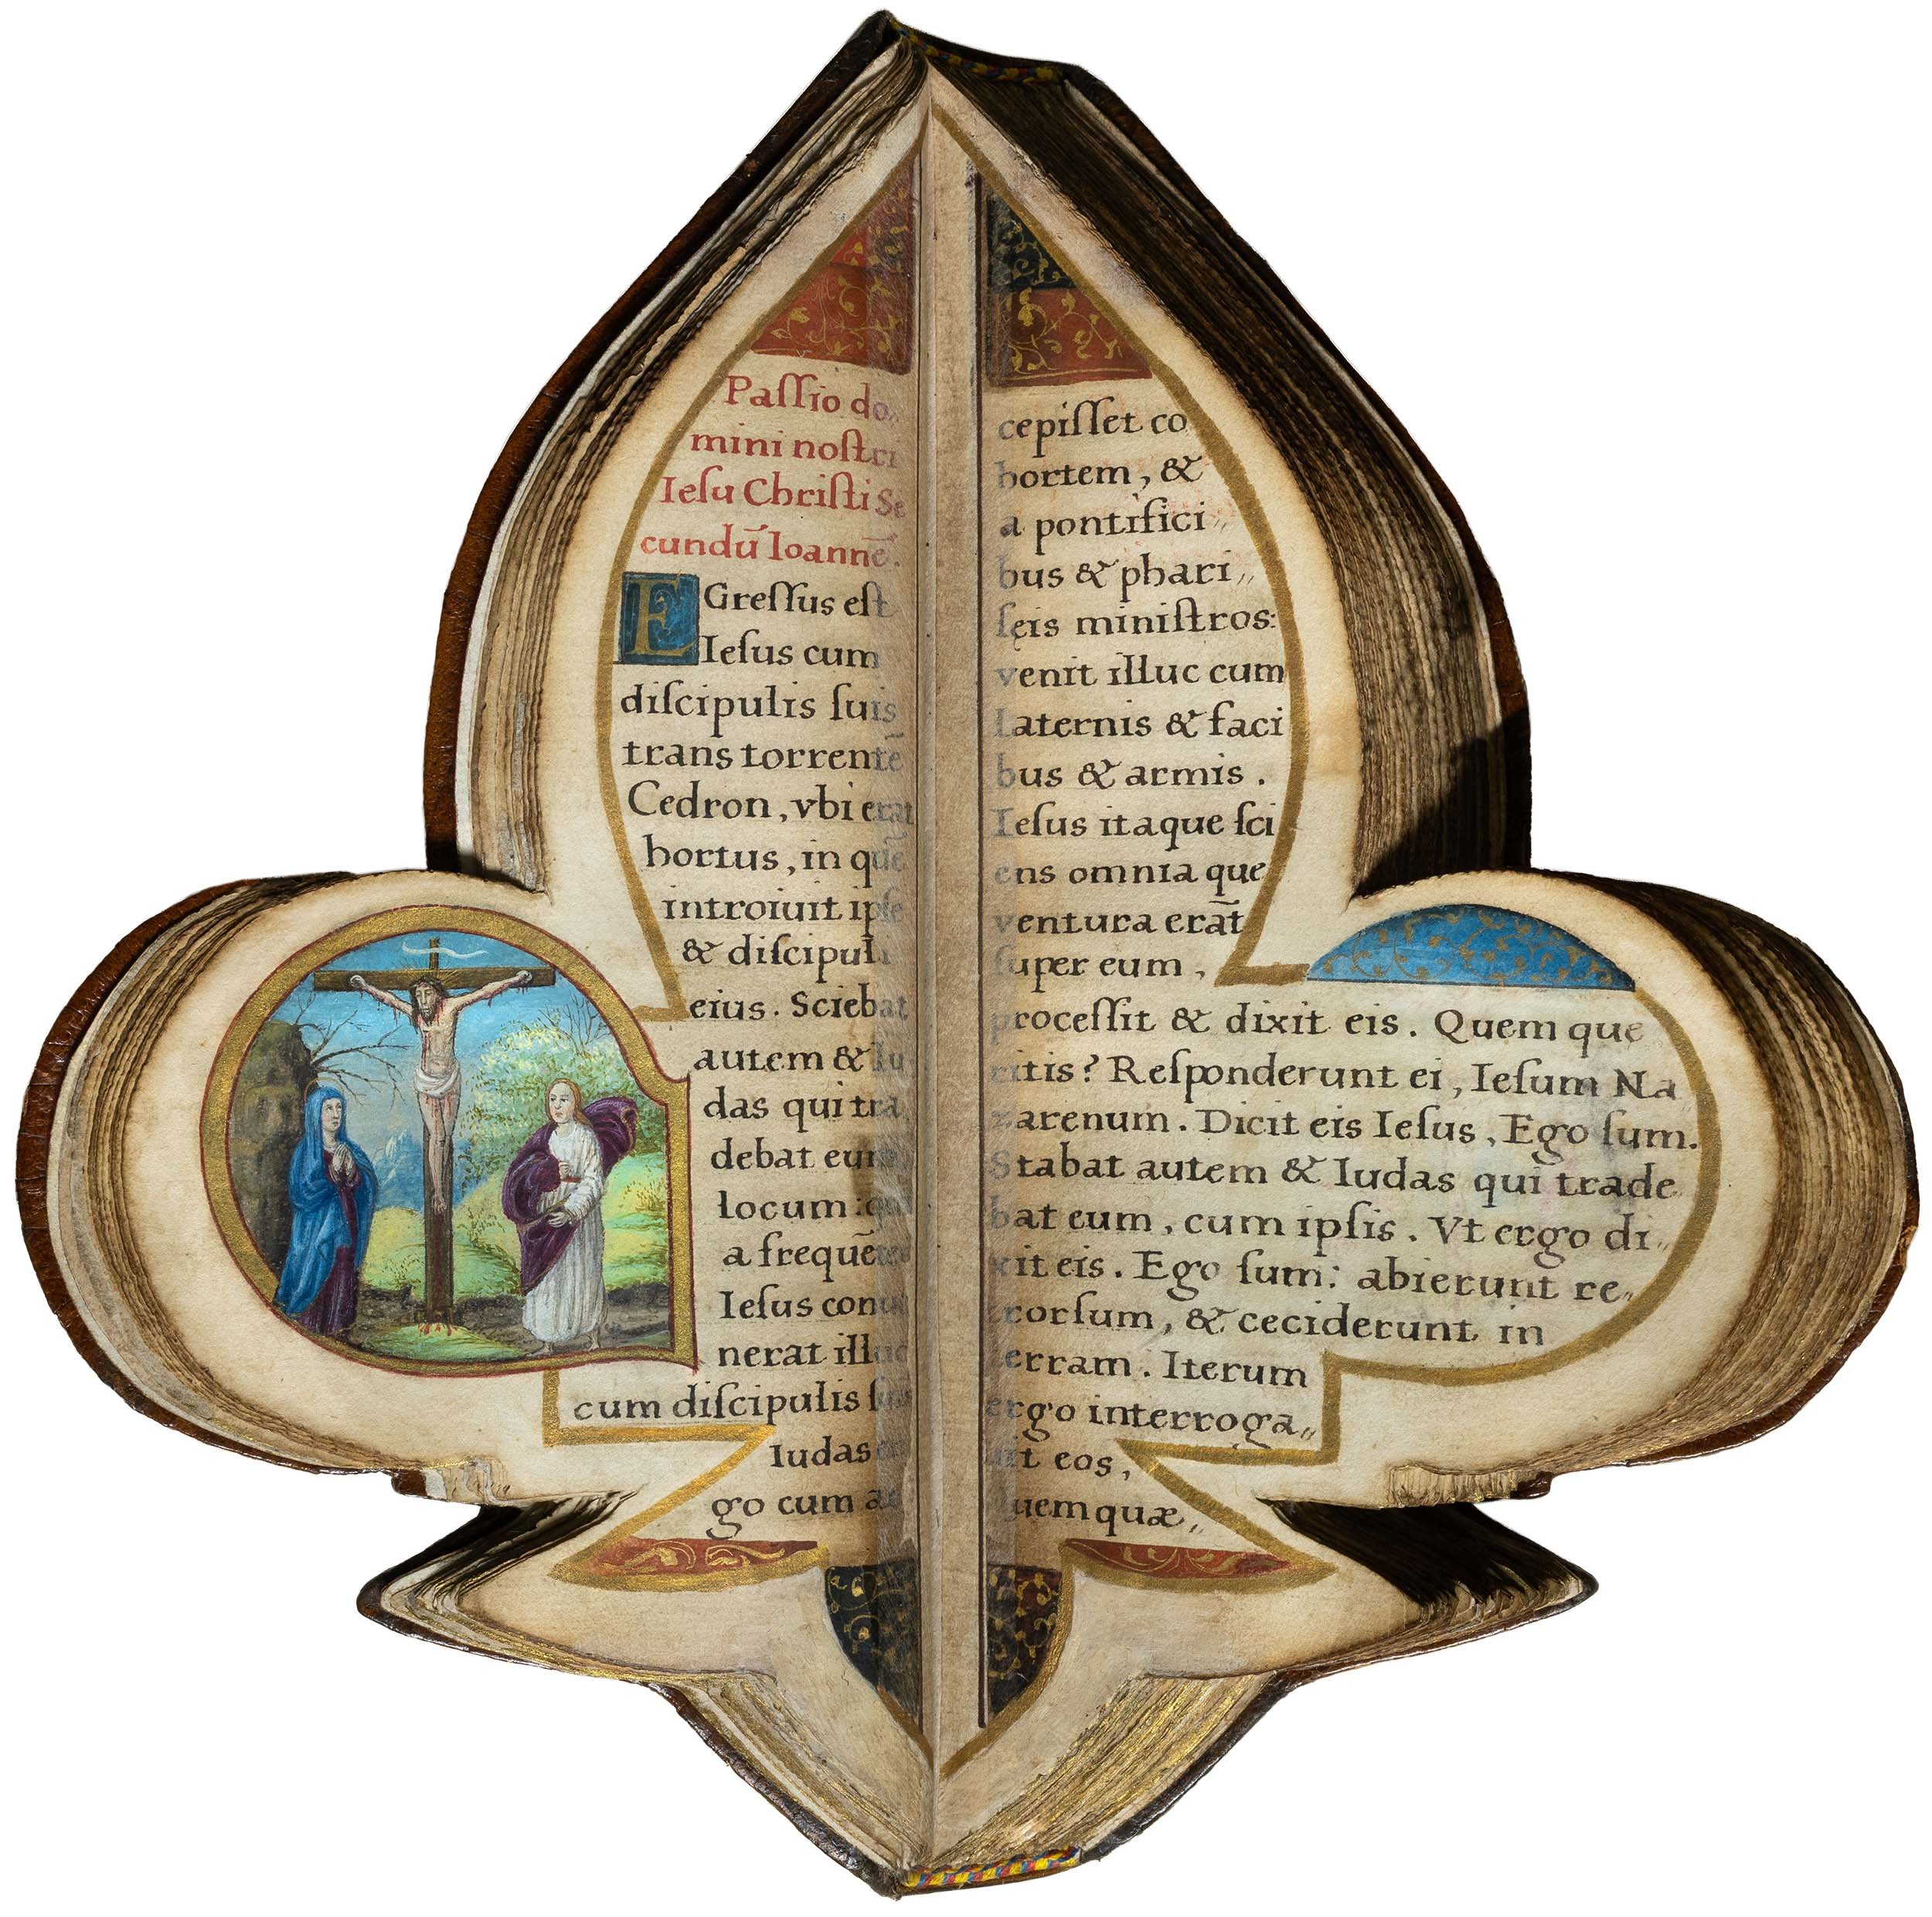 Book-of-hours-bourbon-lily-shape-manuscript-napoleon-beauharnais-combermere-paris-16th-century-09.jpg